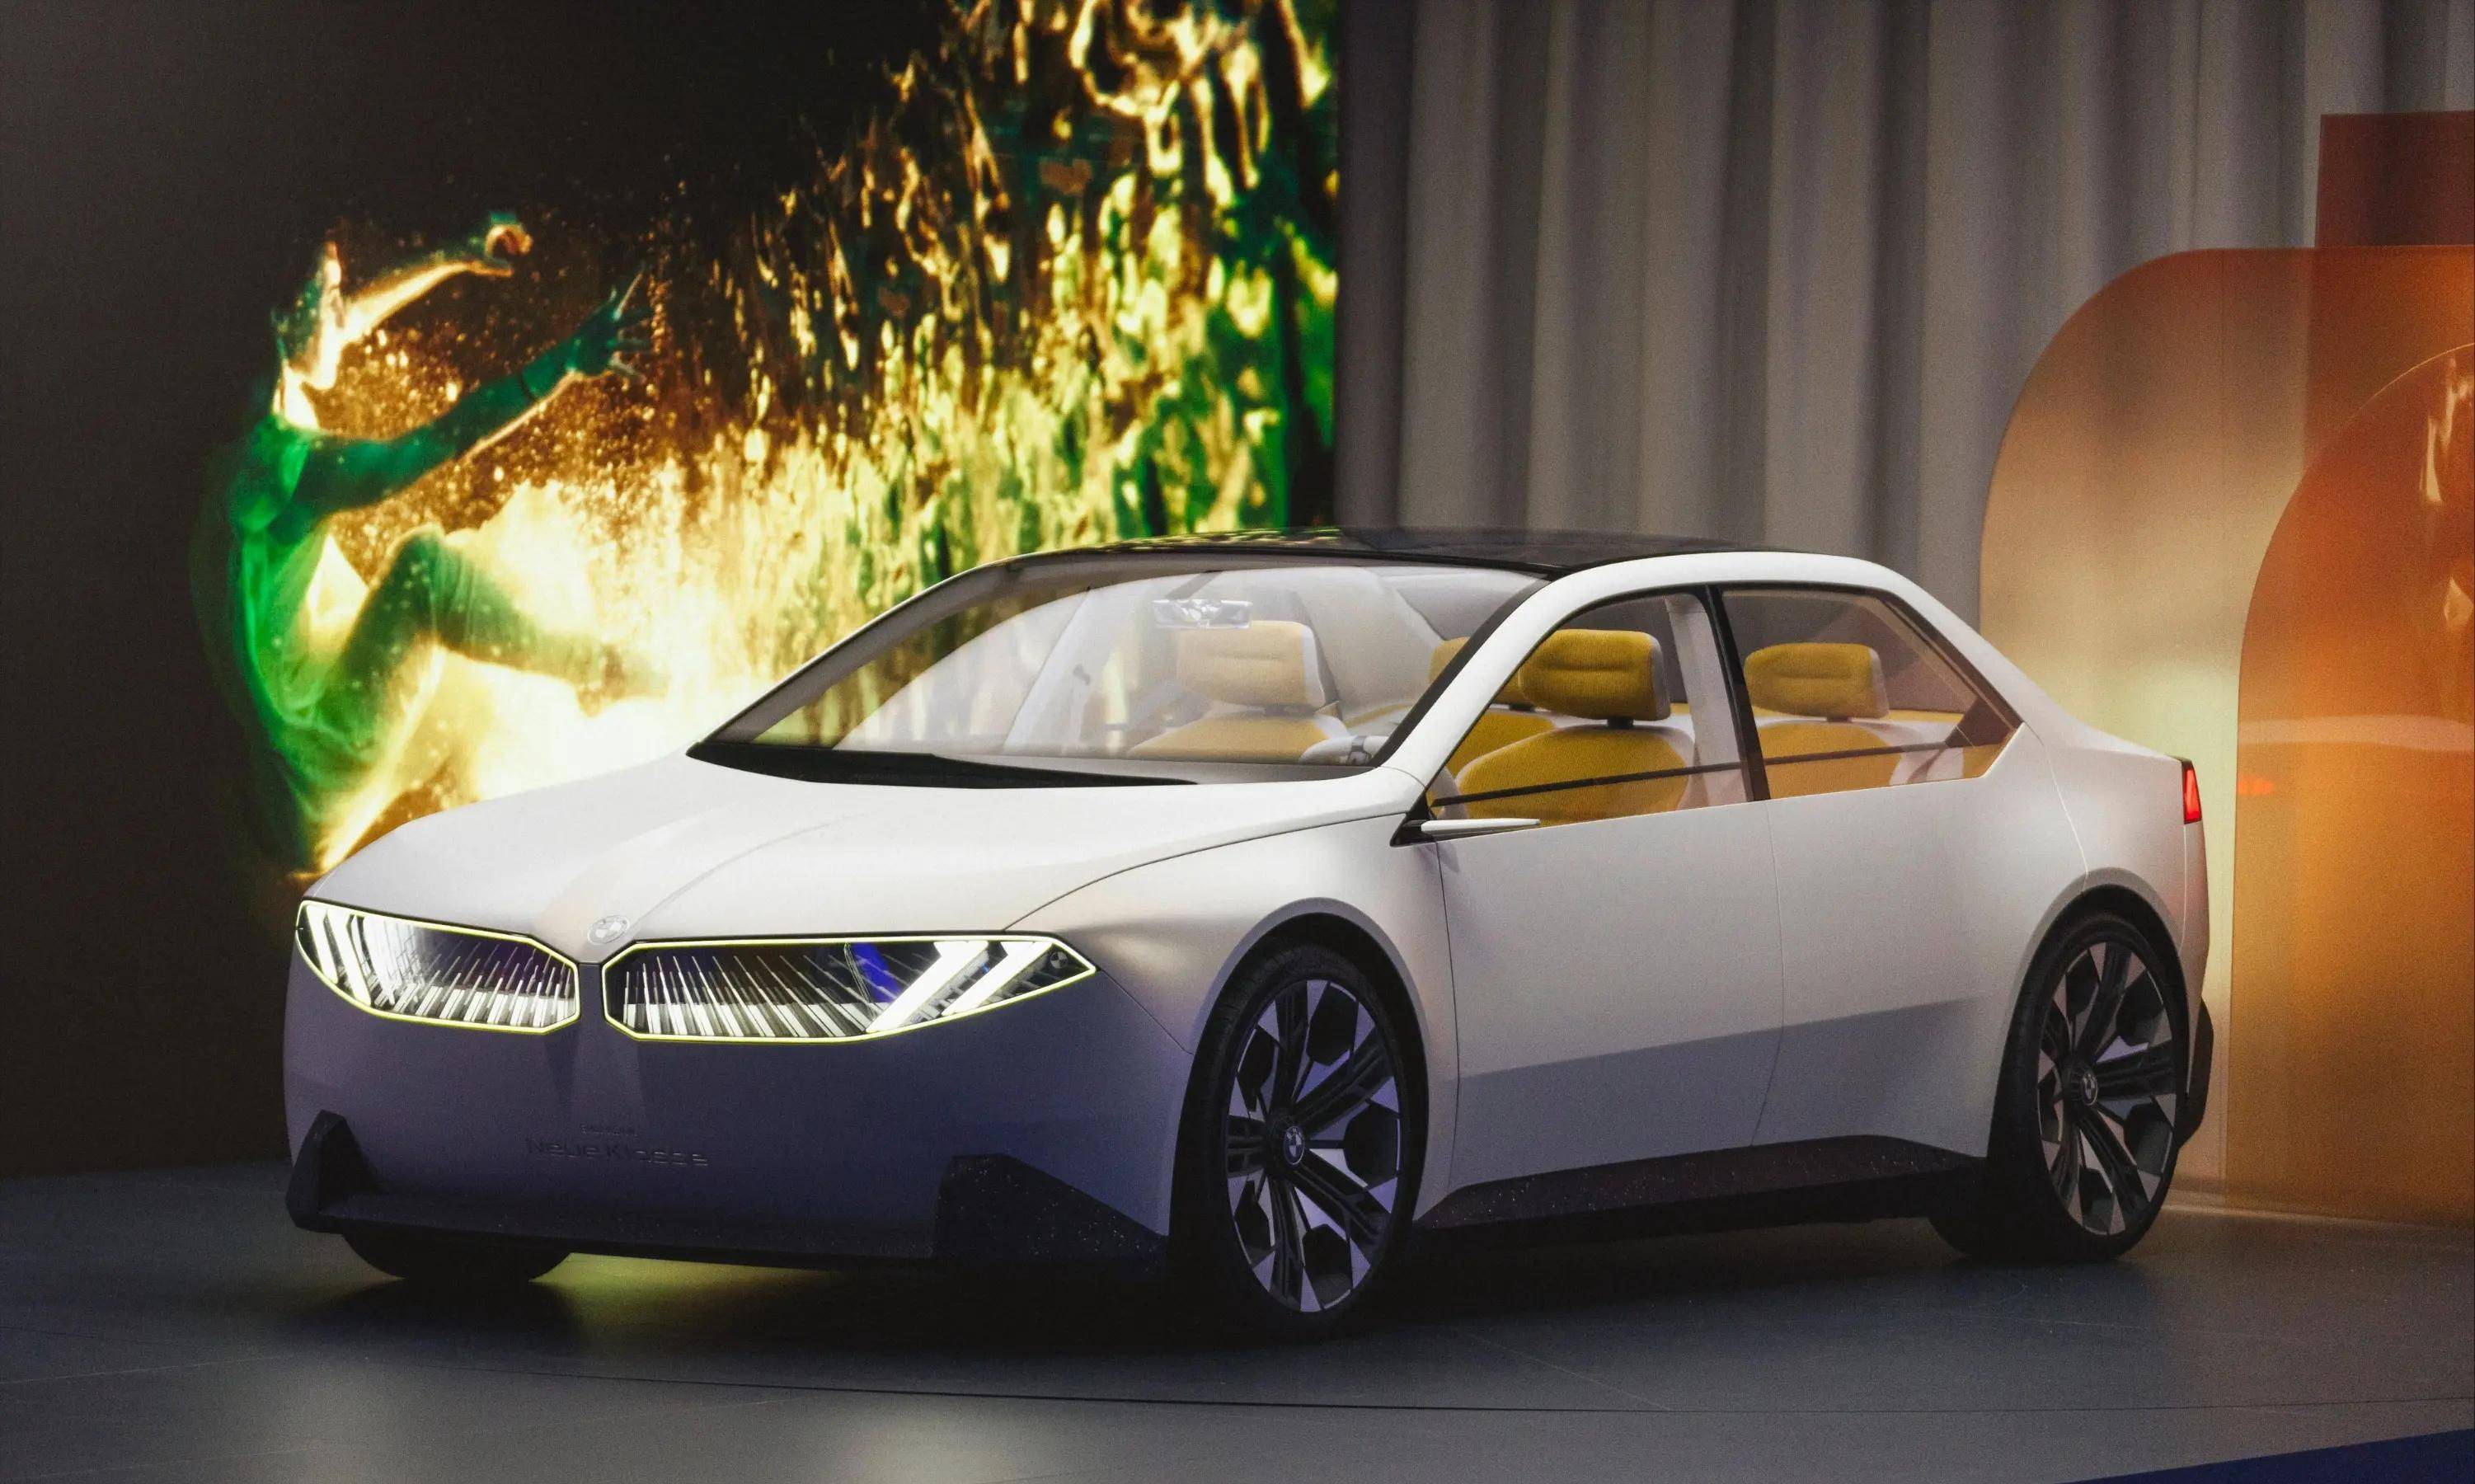 【2023慕尼黑车展】宝马发布全新概念车,预示未来设计与技术进步